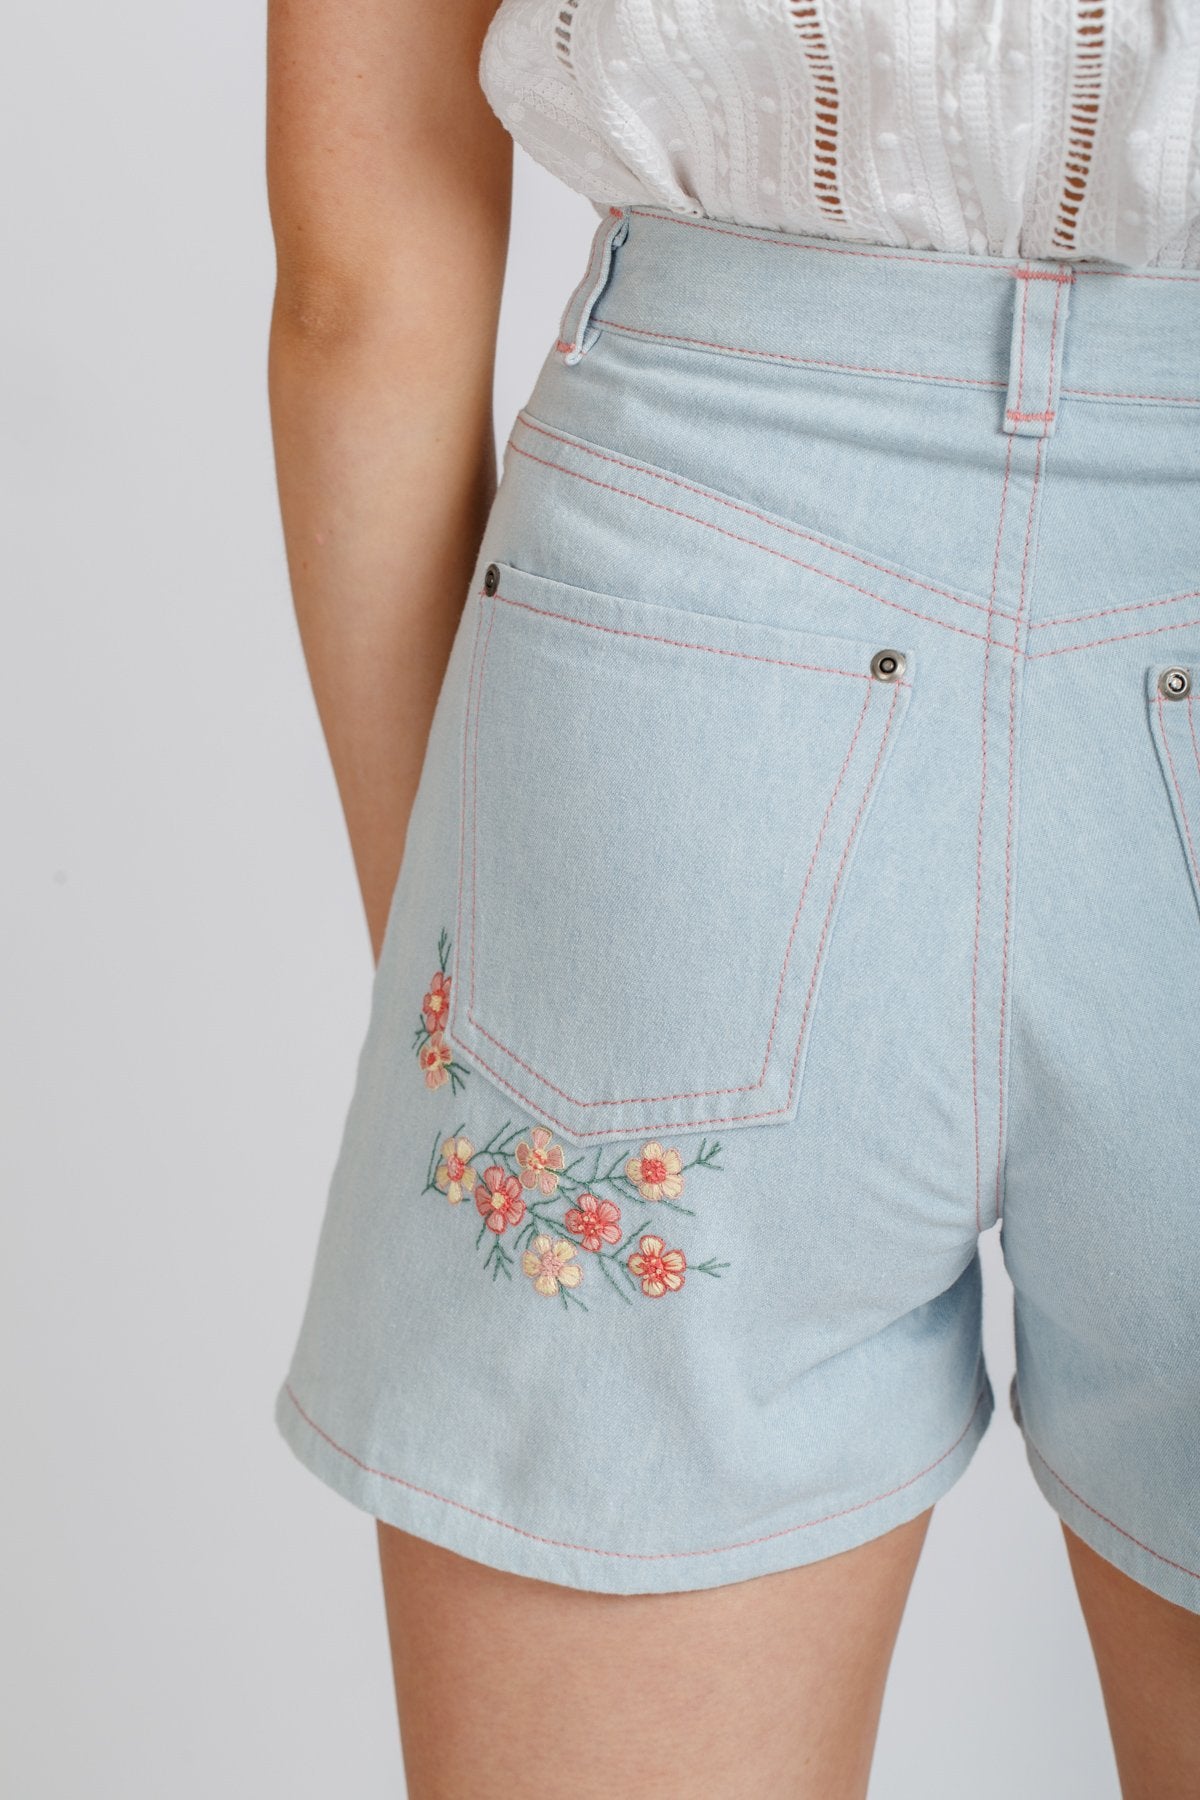 Dawn Jeans by Megan Nielsen – Sew Yarn Crafty & Studio